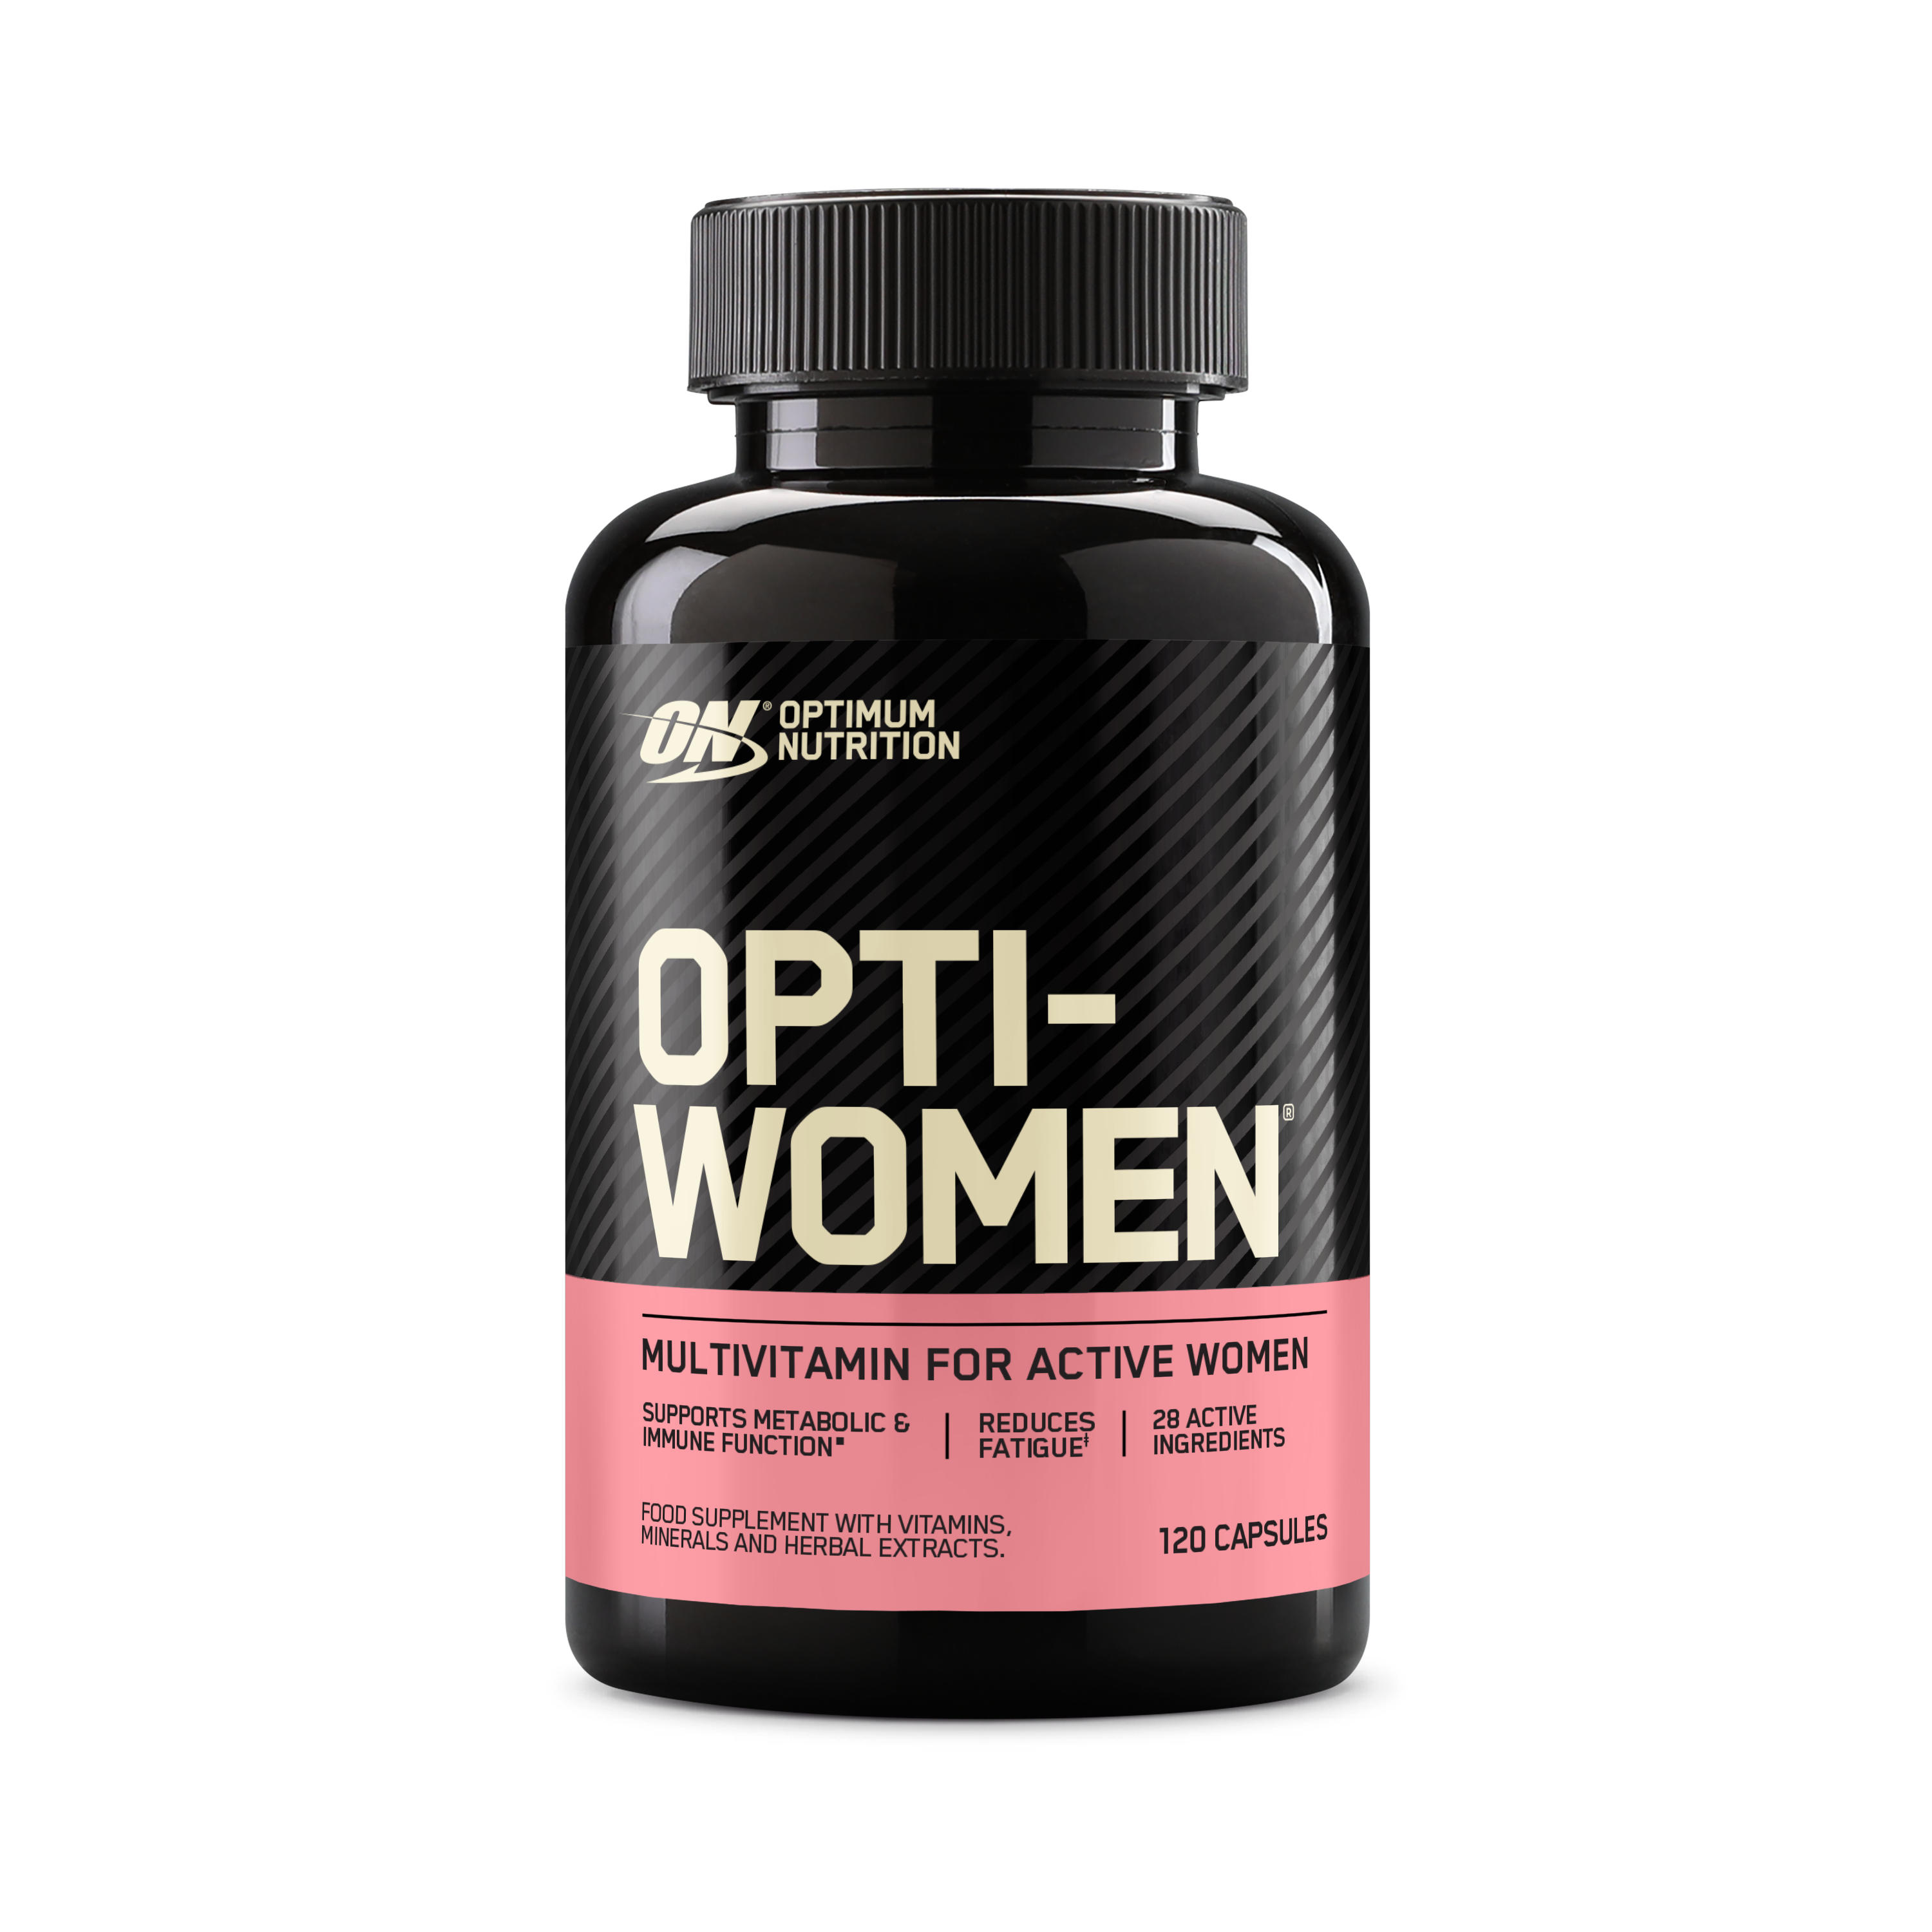 Optimum Nutrition UK Optimum Nutrition Opti-women Supplement 120 Capsules